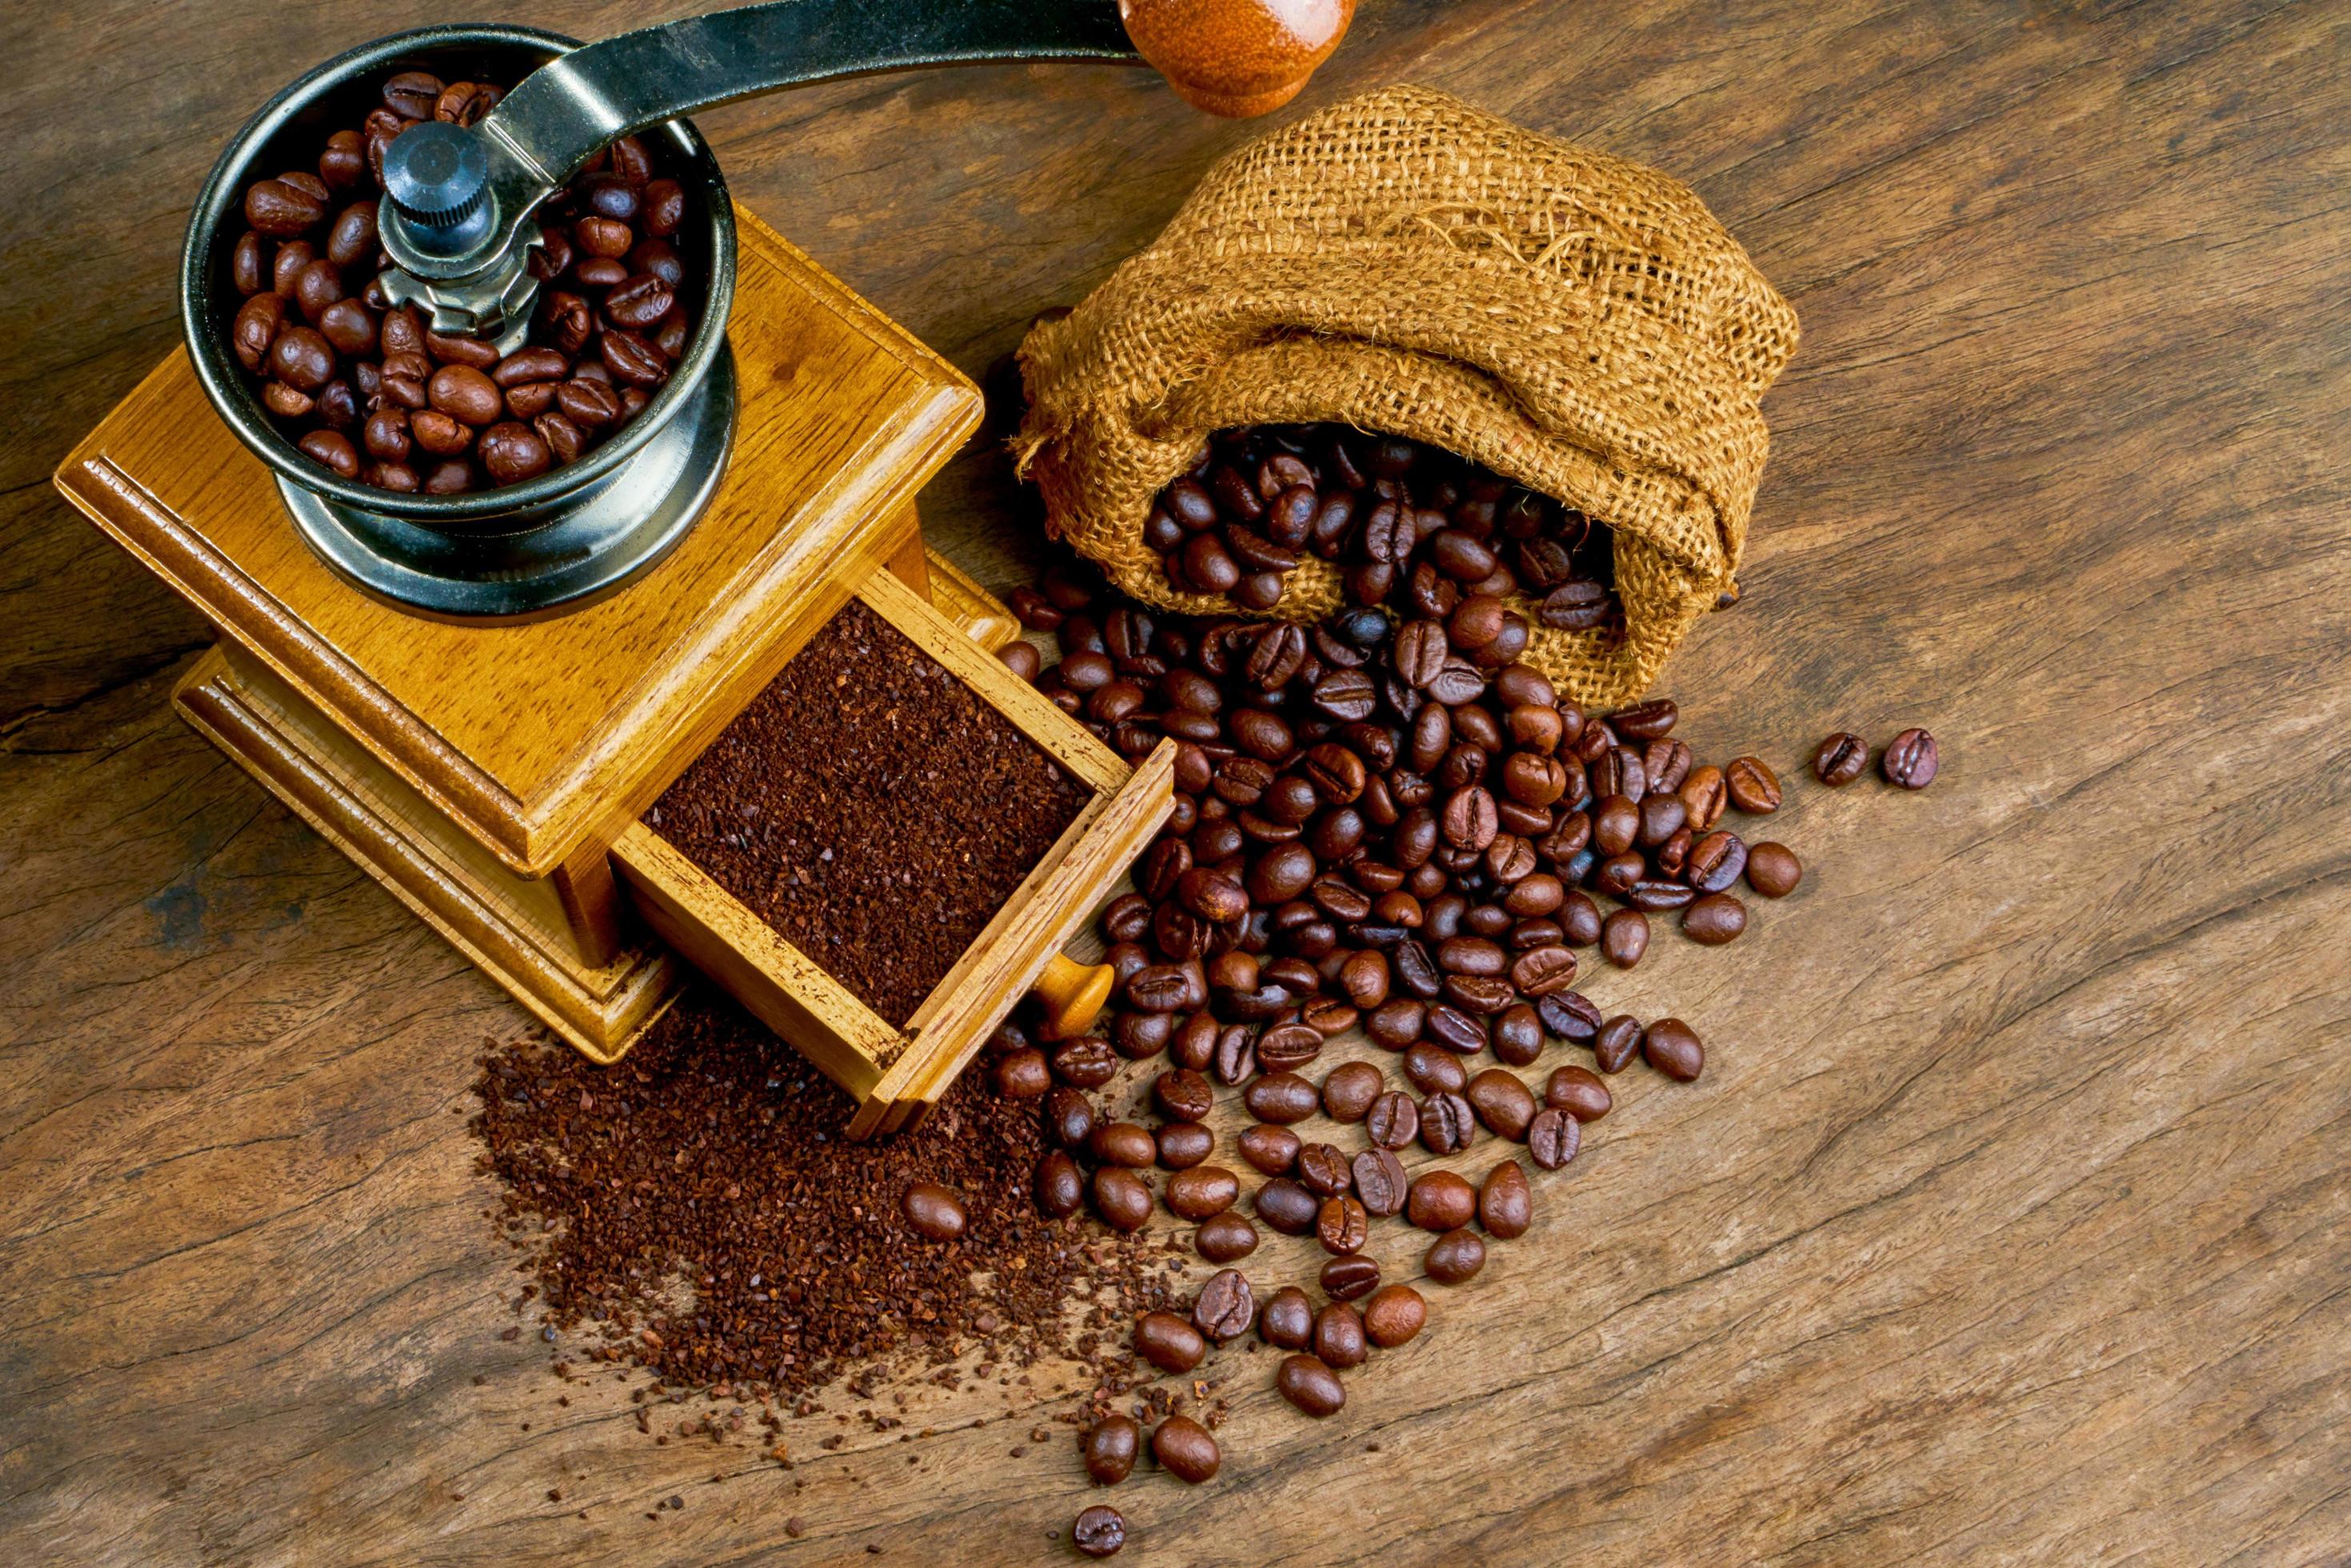 Manual Coffee Grinder, Coffee Bean Grinder, Vintage Antique Wooden